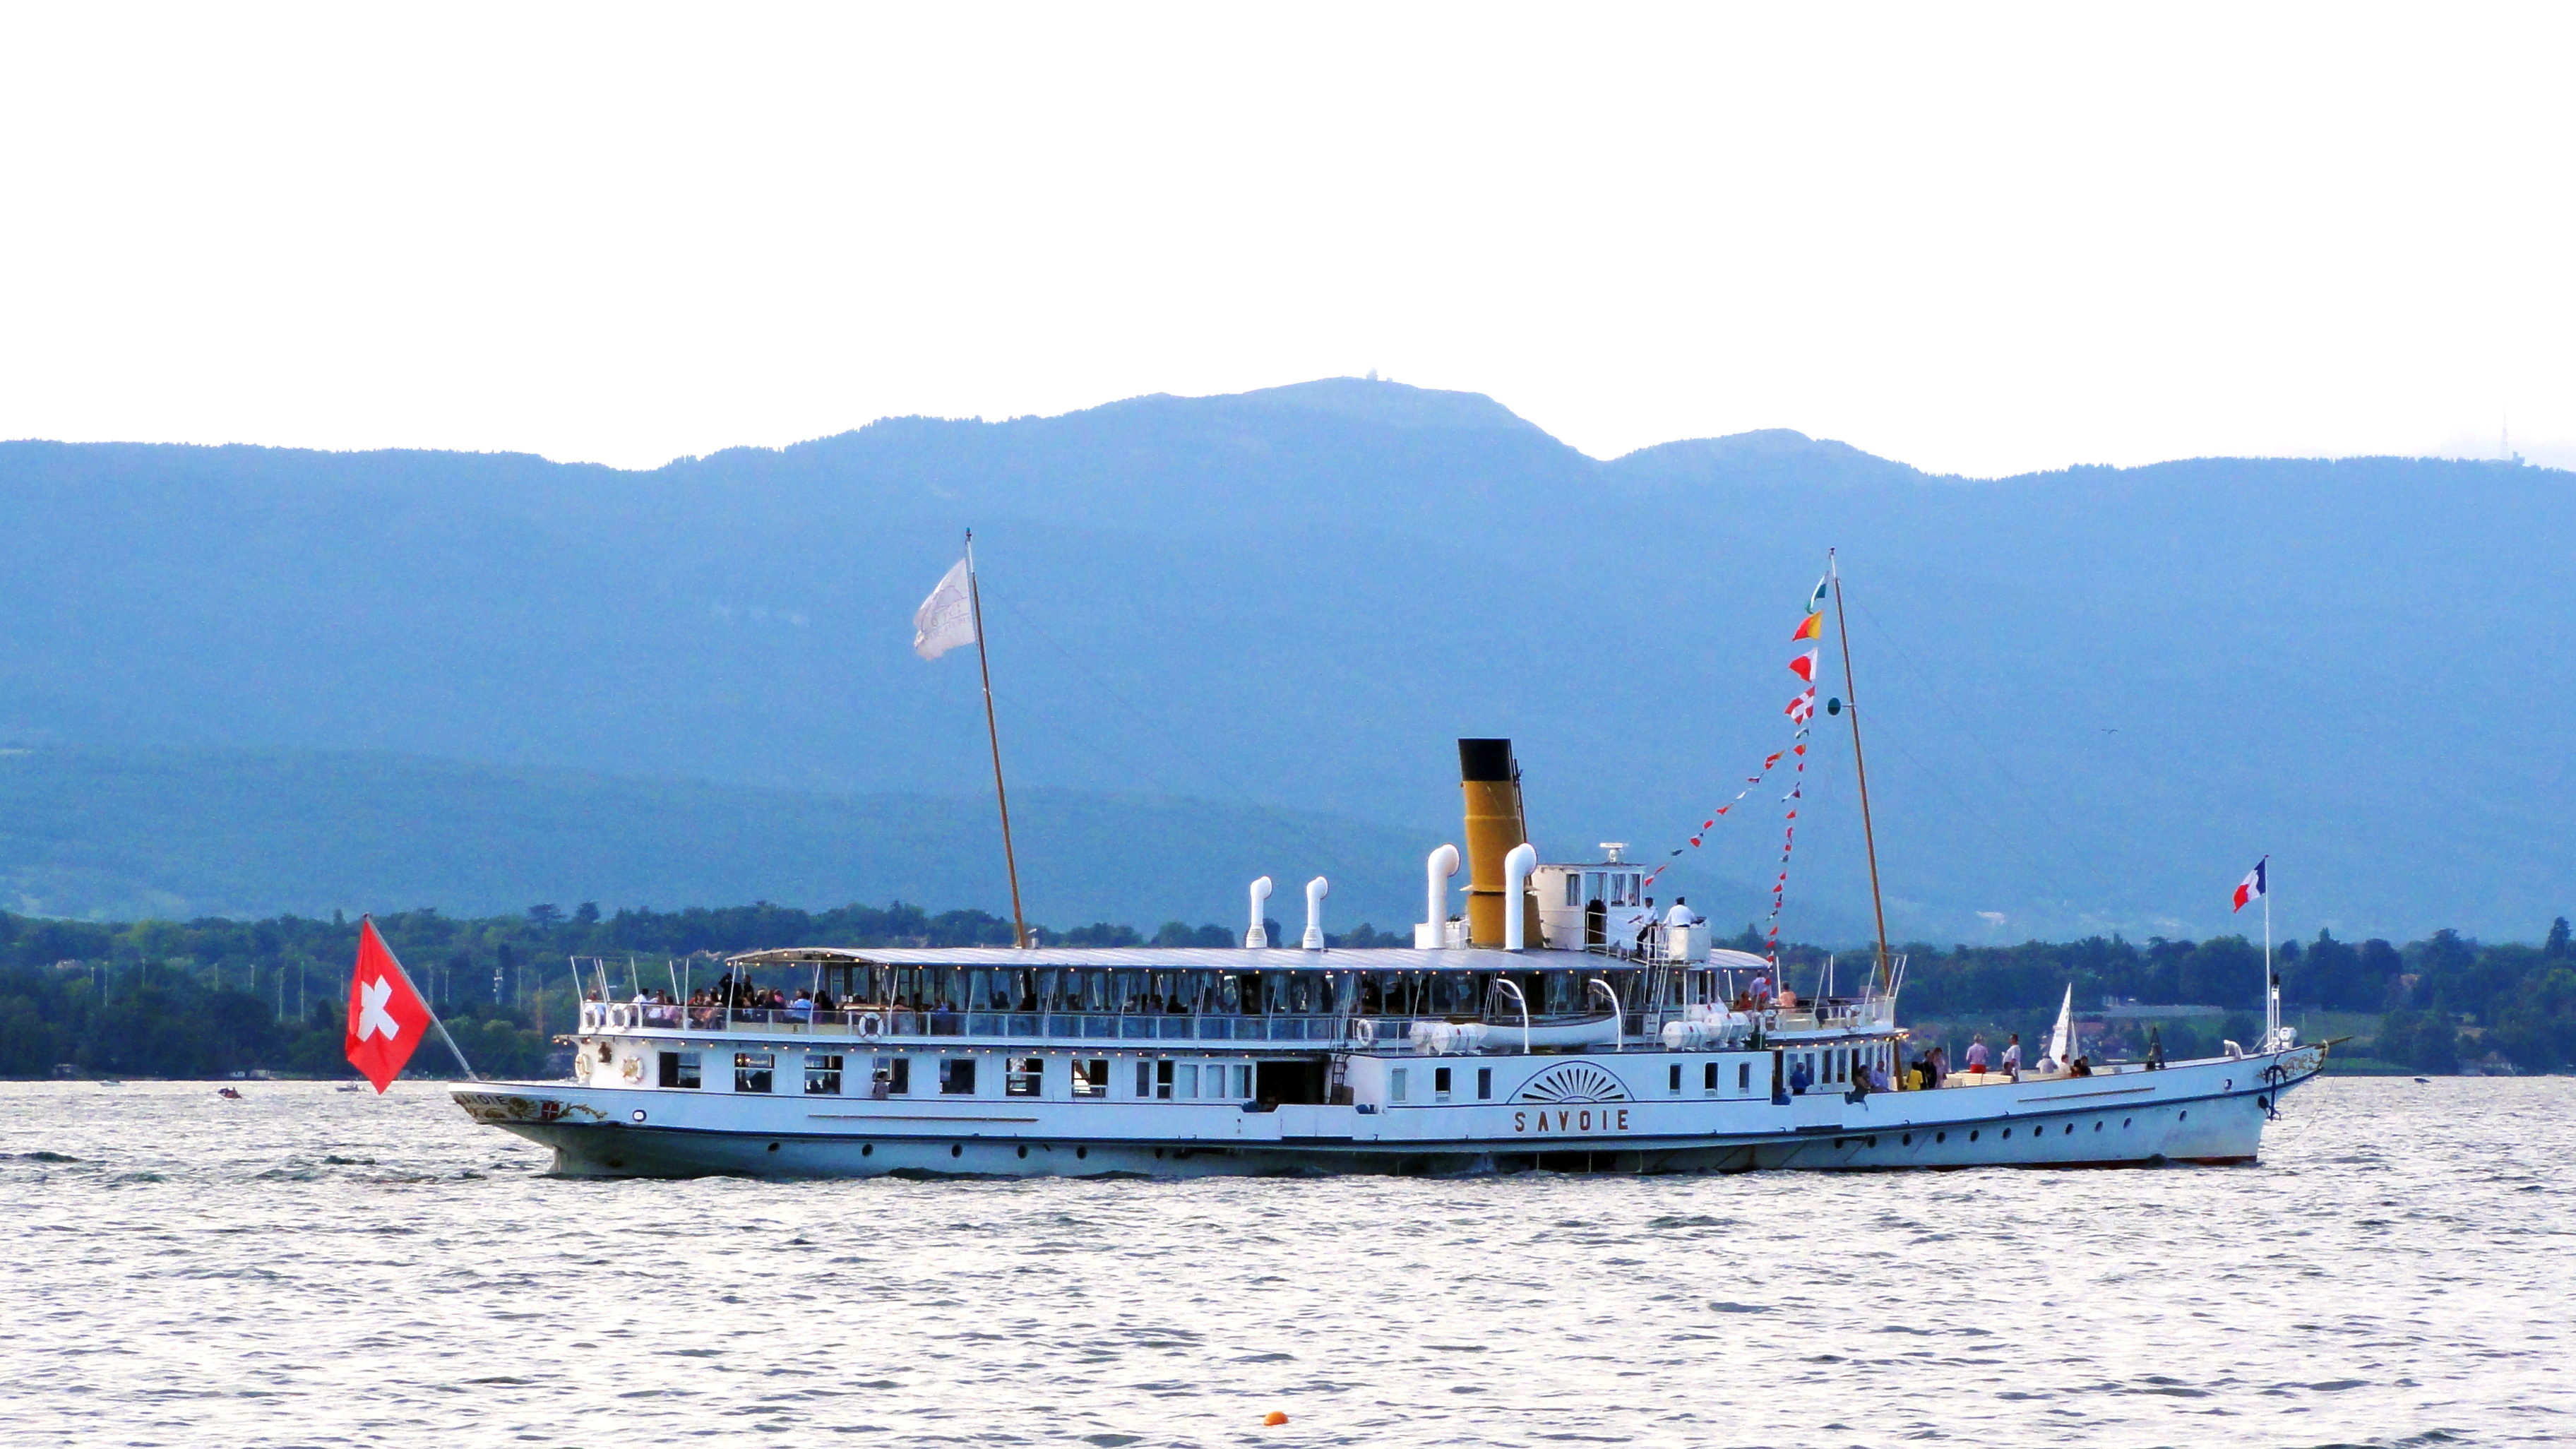 Savoie (bateau à vapeur)